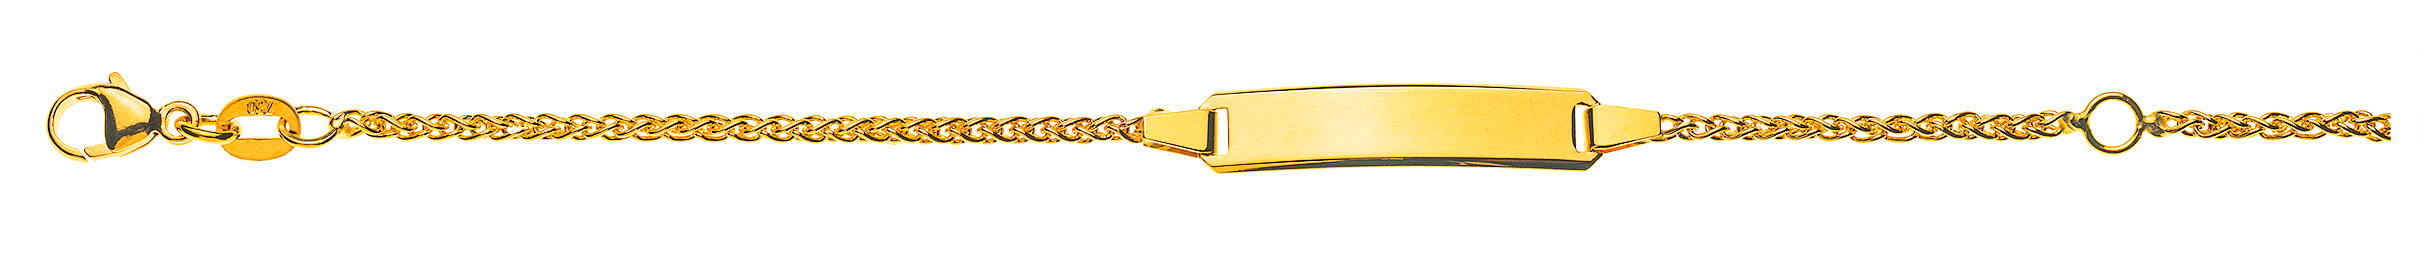 AURONOS Élégance ID-Bracelet or jaune 14k chaîne tressée 18cm